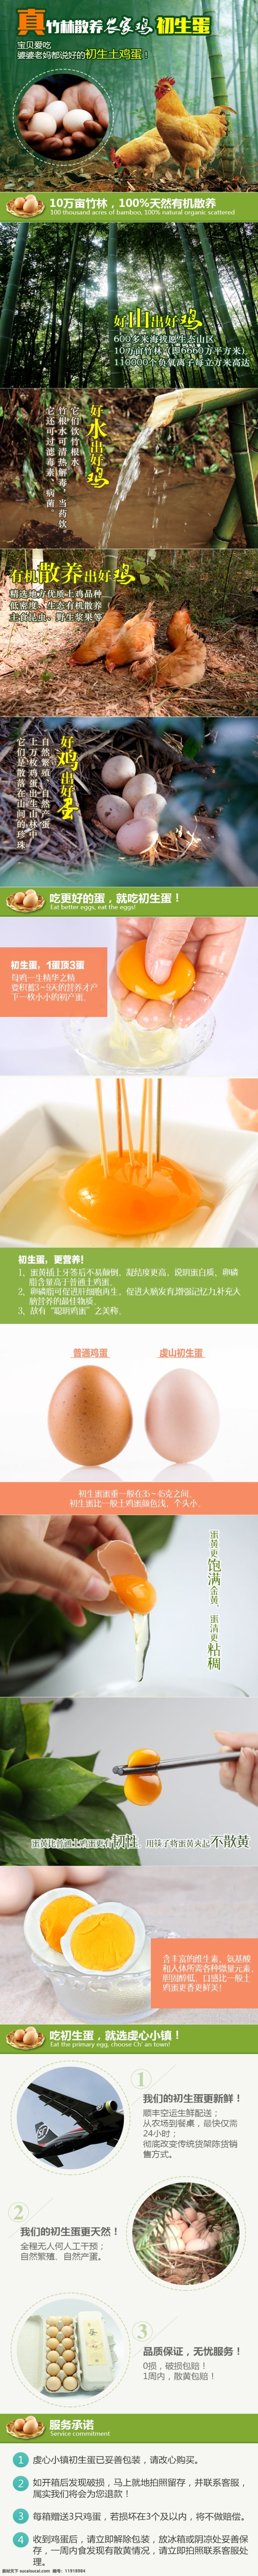 散养 土 鸡蛋 详情 页 土鸡 蛋 详情页 淘宝 蛋类 安全 健康